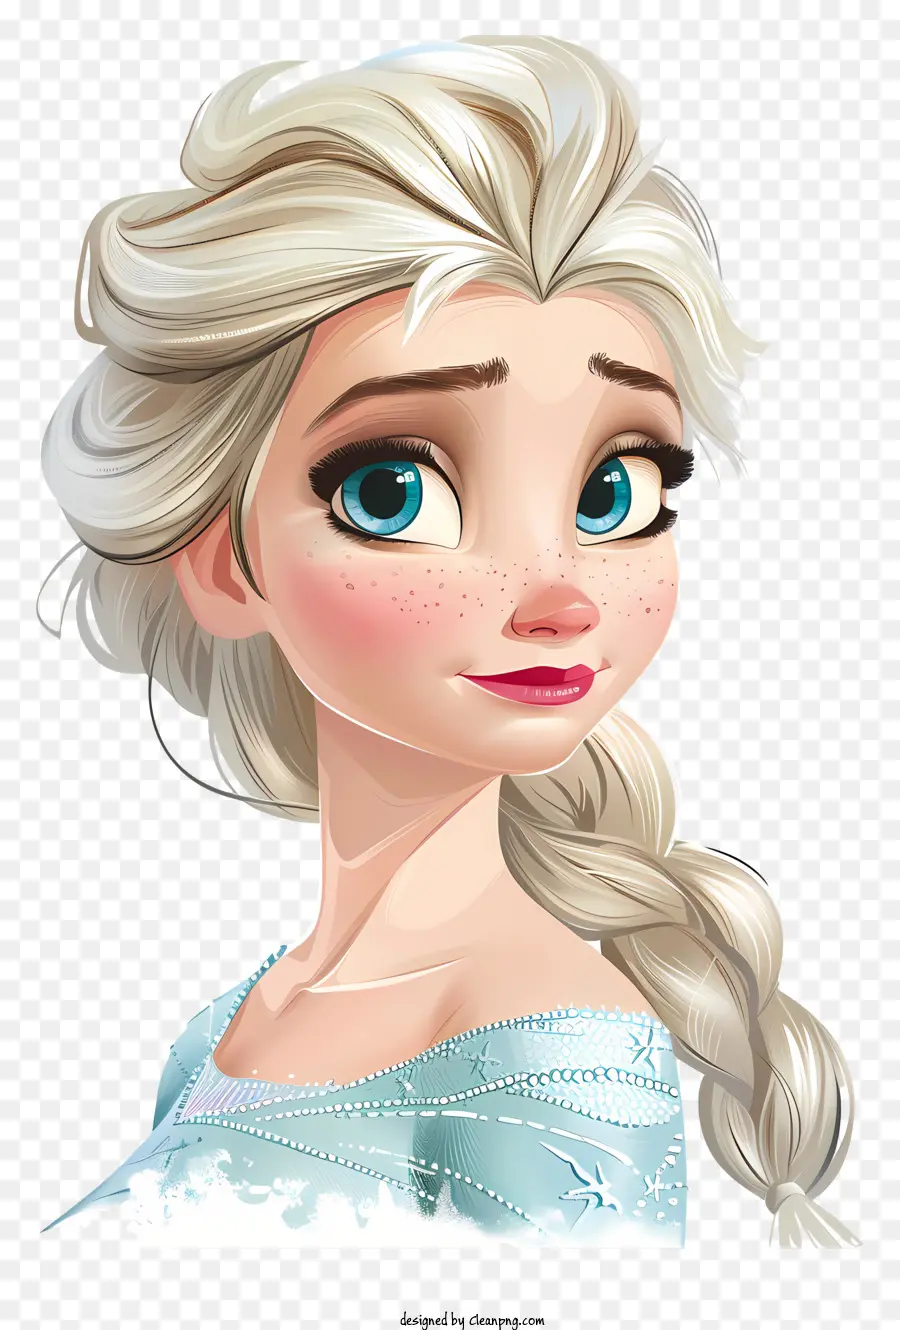 Elsa - Traurige Prinzessin mit blonden Haaren und Perlenkette